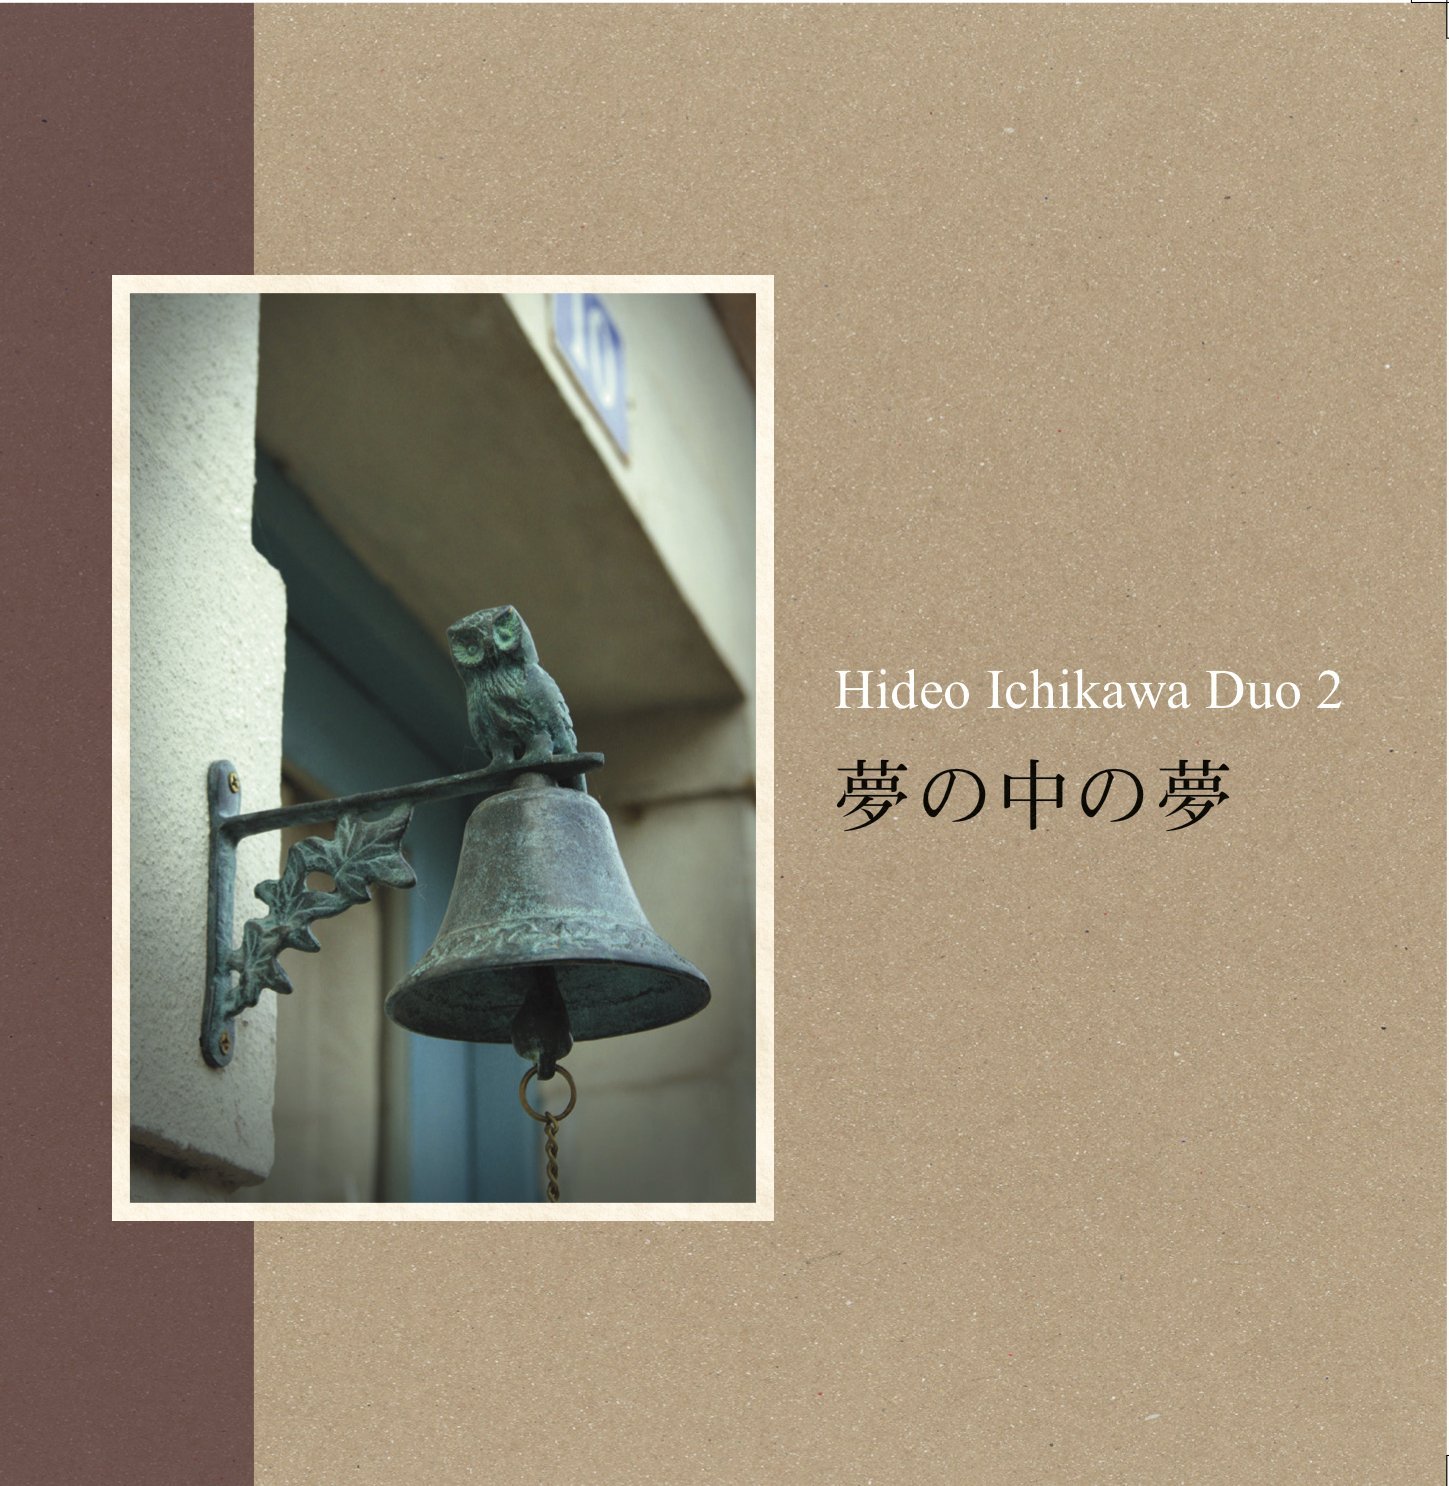 HIDEO ICHIKAWA - Duo Ⅱ : Yumenonakanoyume cover 